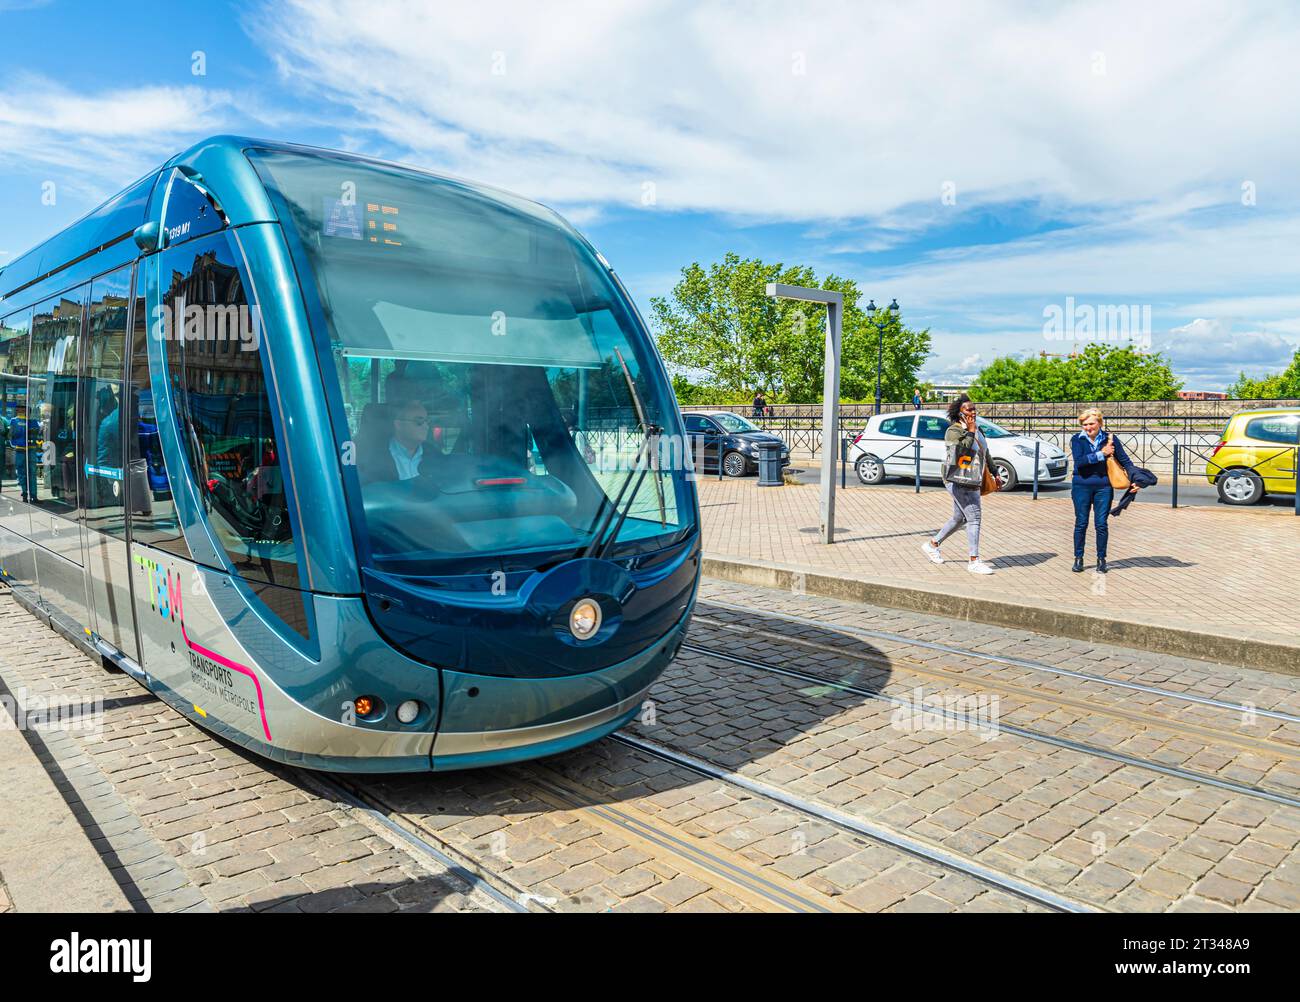 Passagiere, die ankommen und anstehen, um eine Tram Bordeaux Métropole (TBM) in Bordeaux, einer Hafenstadt im Südwesten Frankreichs, zu erreichen und zu verlassen Stockfoto